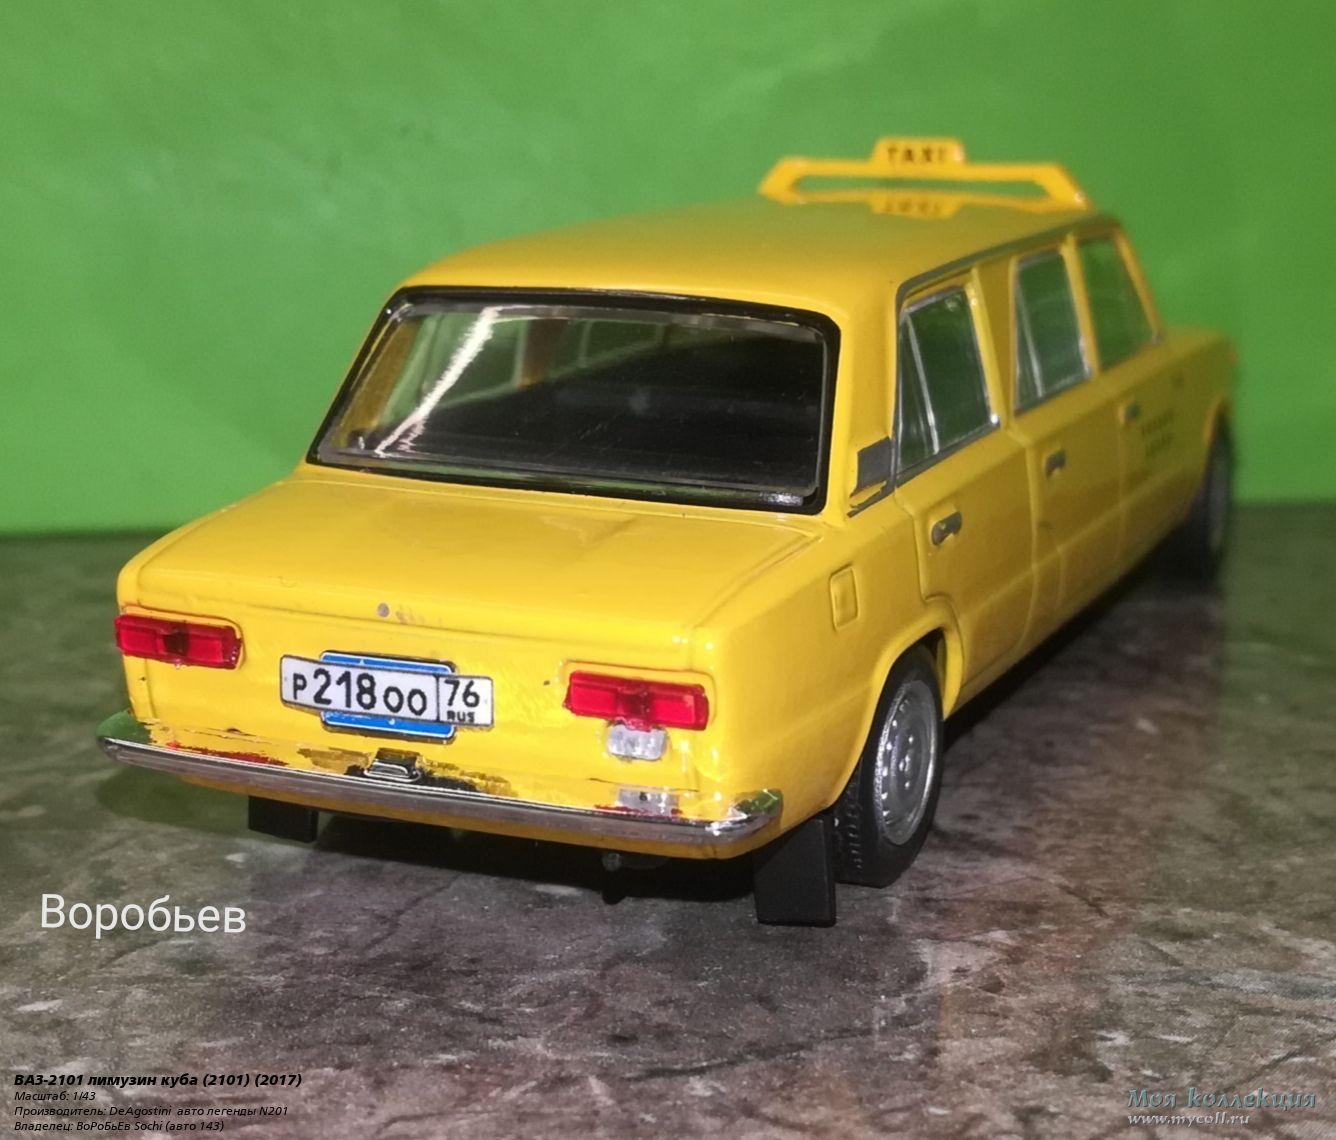 Жигули ВАЗ , превращенный в лимузин, продают во Львове по цене долларов, фото - Телеграф